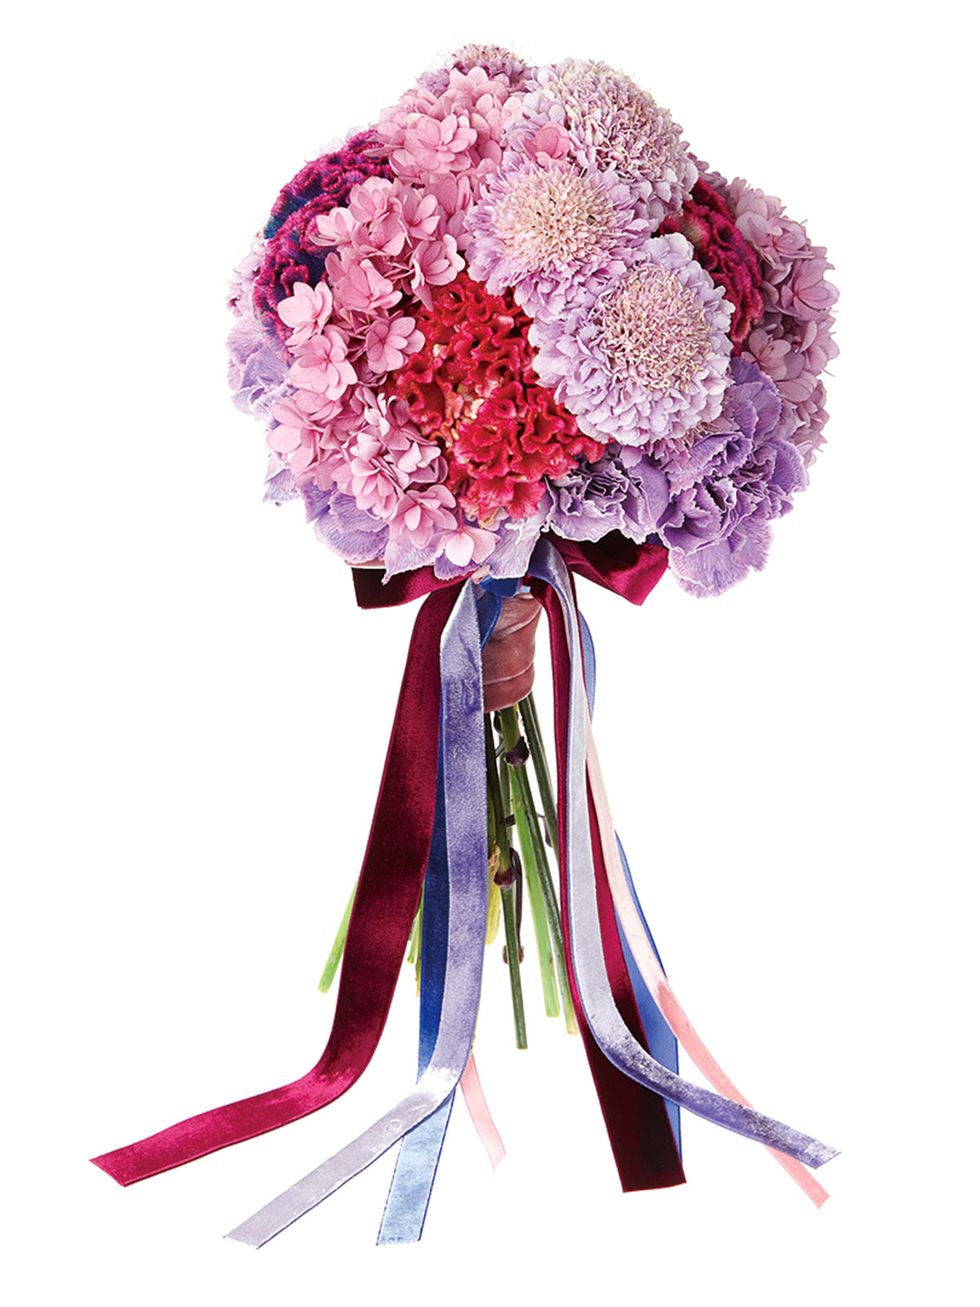 Petal, Flower, Purple, Magenta, Cut flowers, Violet, Bouquet, Art, Lavender, Flower Arranging, 